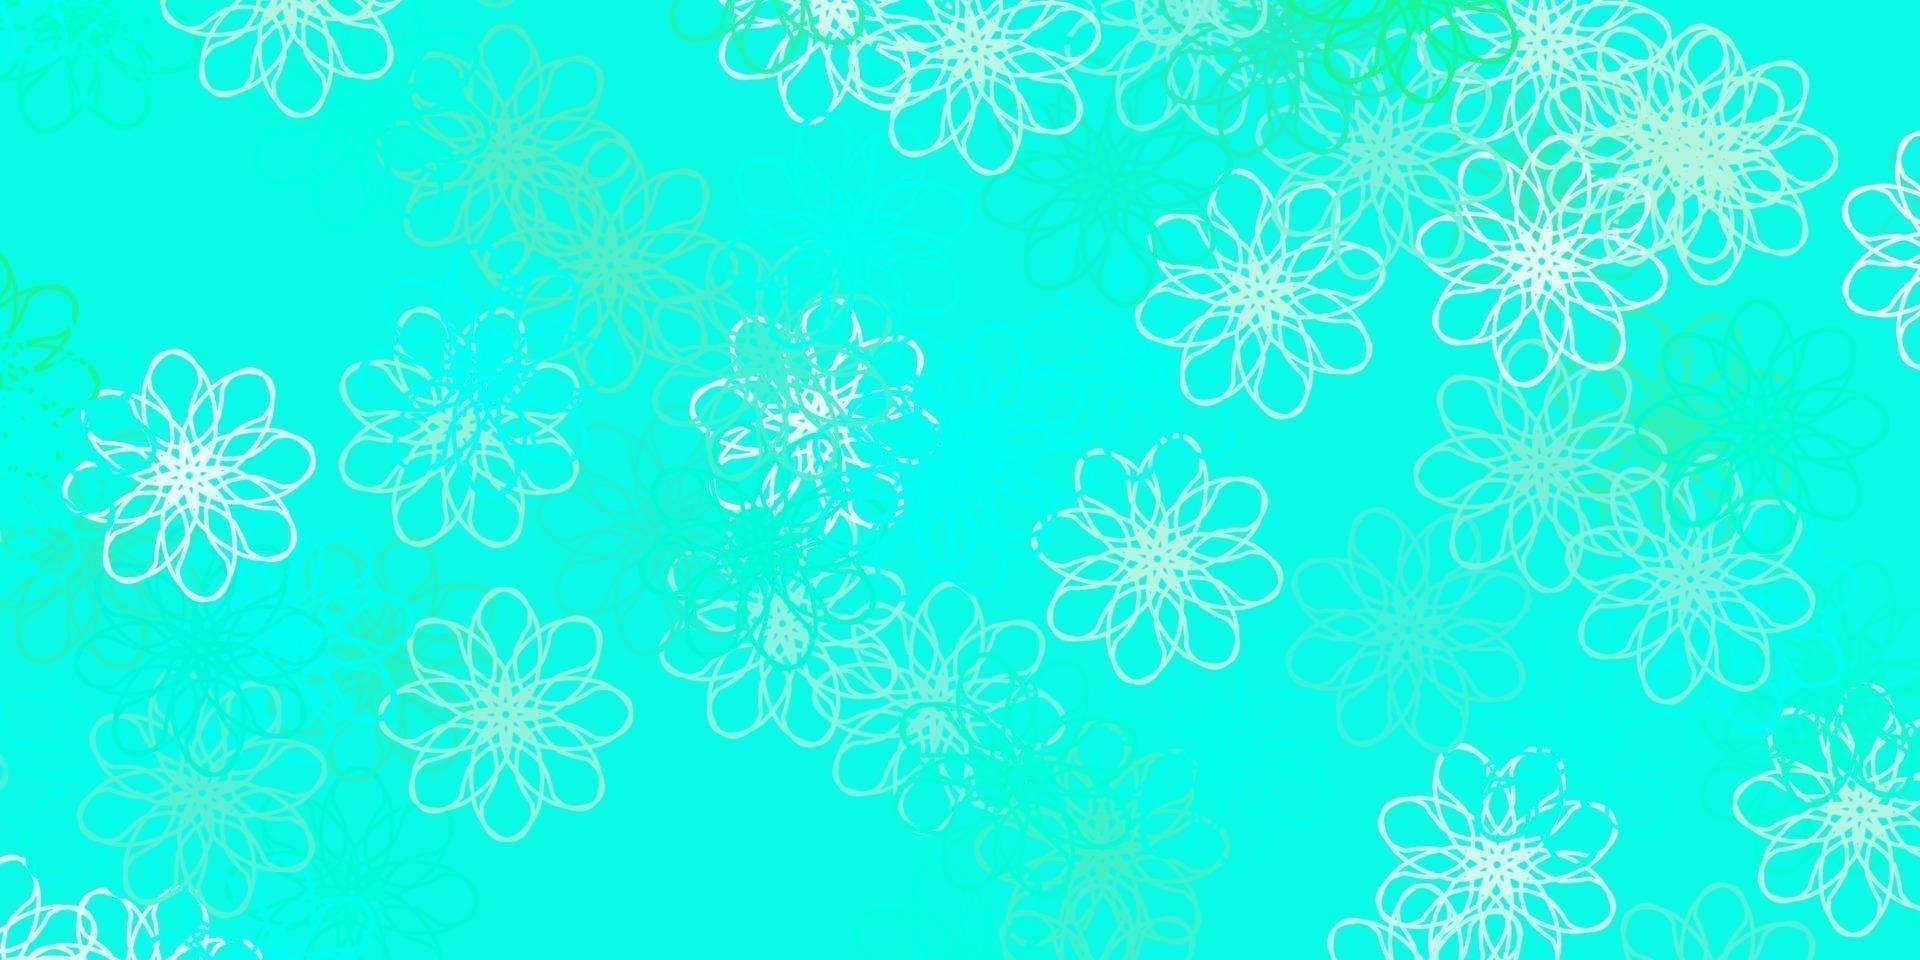 modello di doodle vettoriale verde chiaro con fiori.